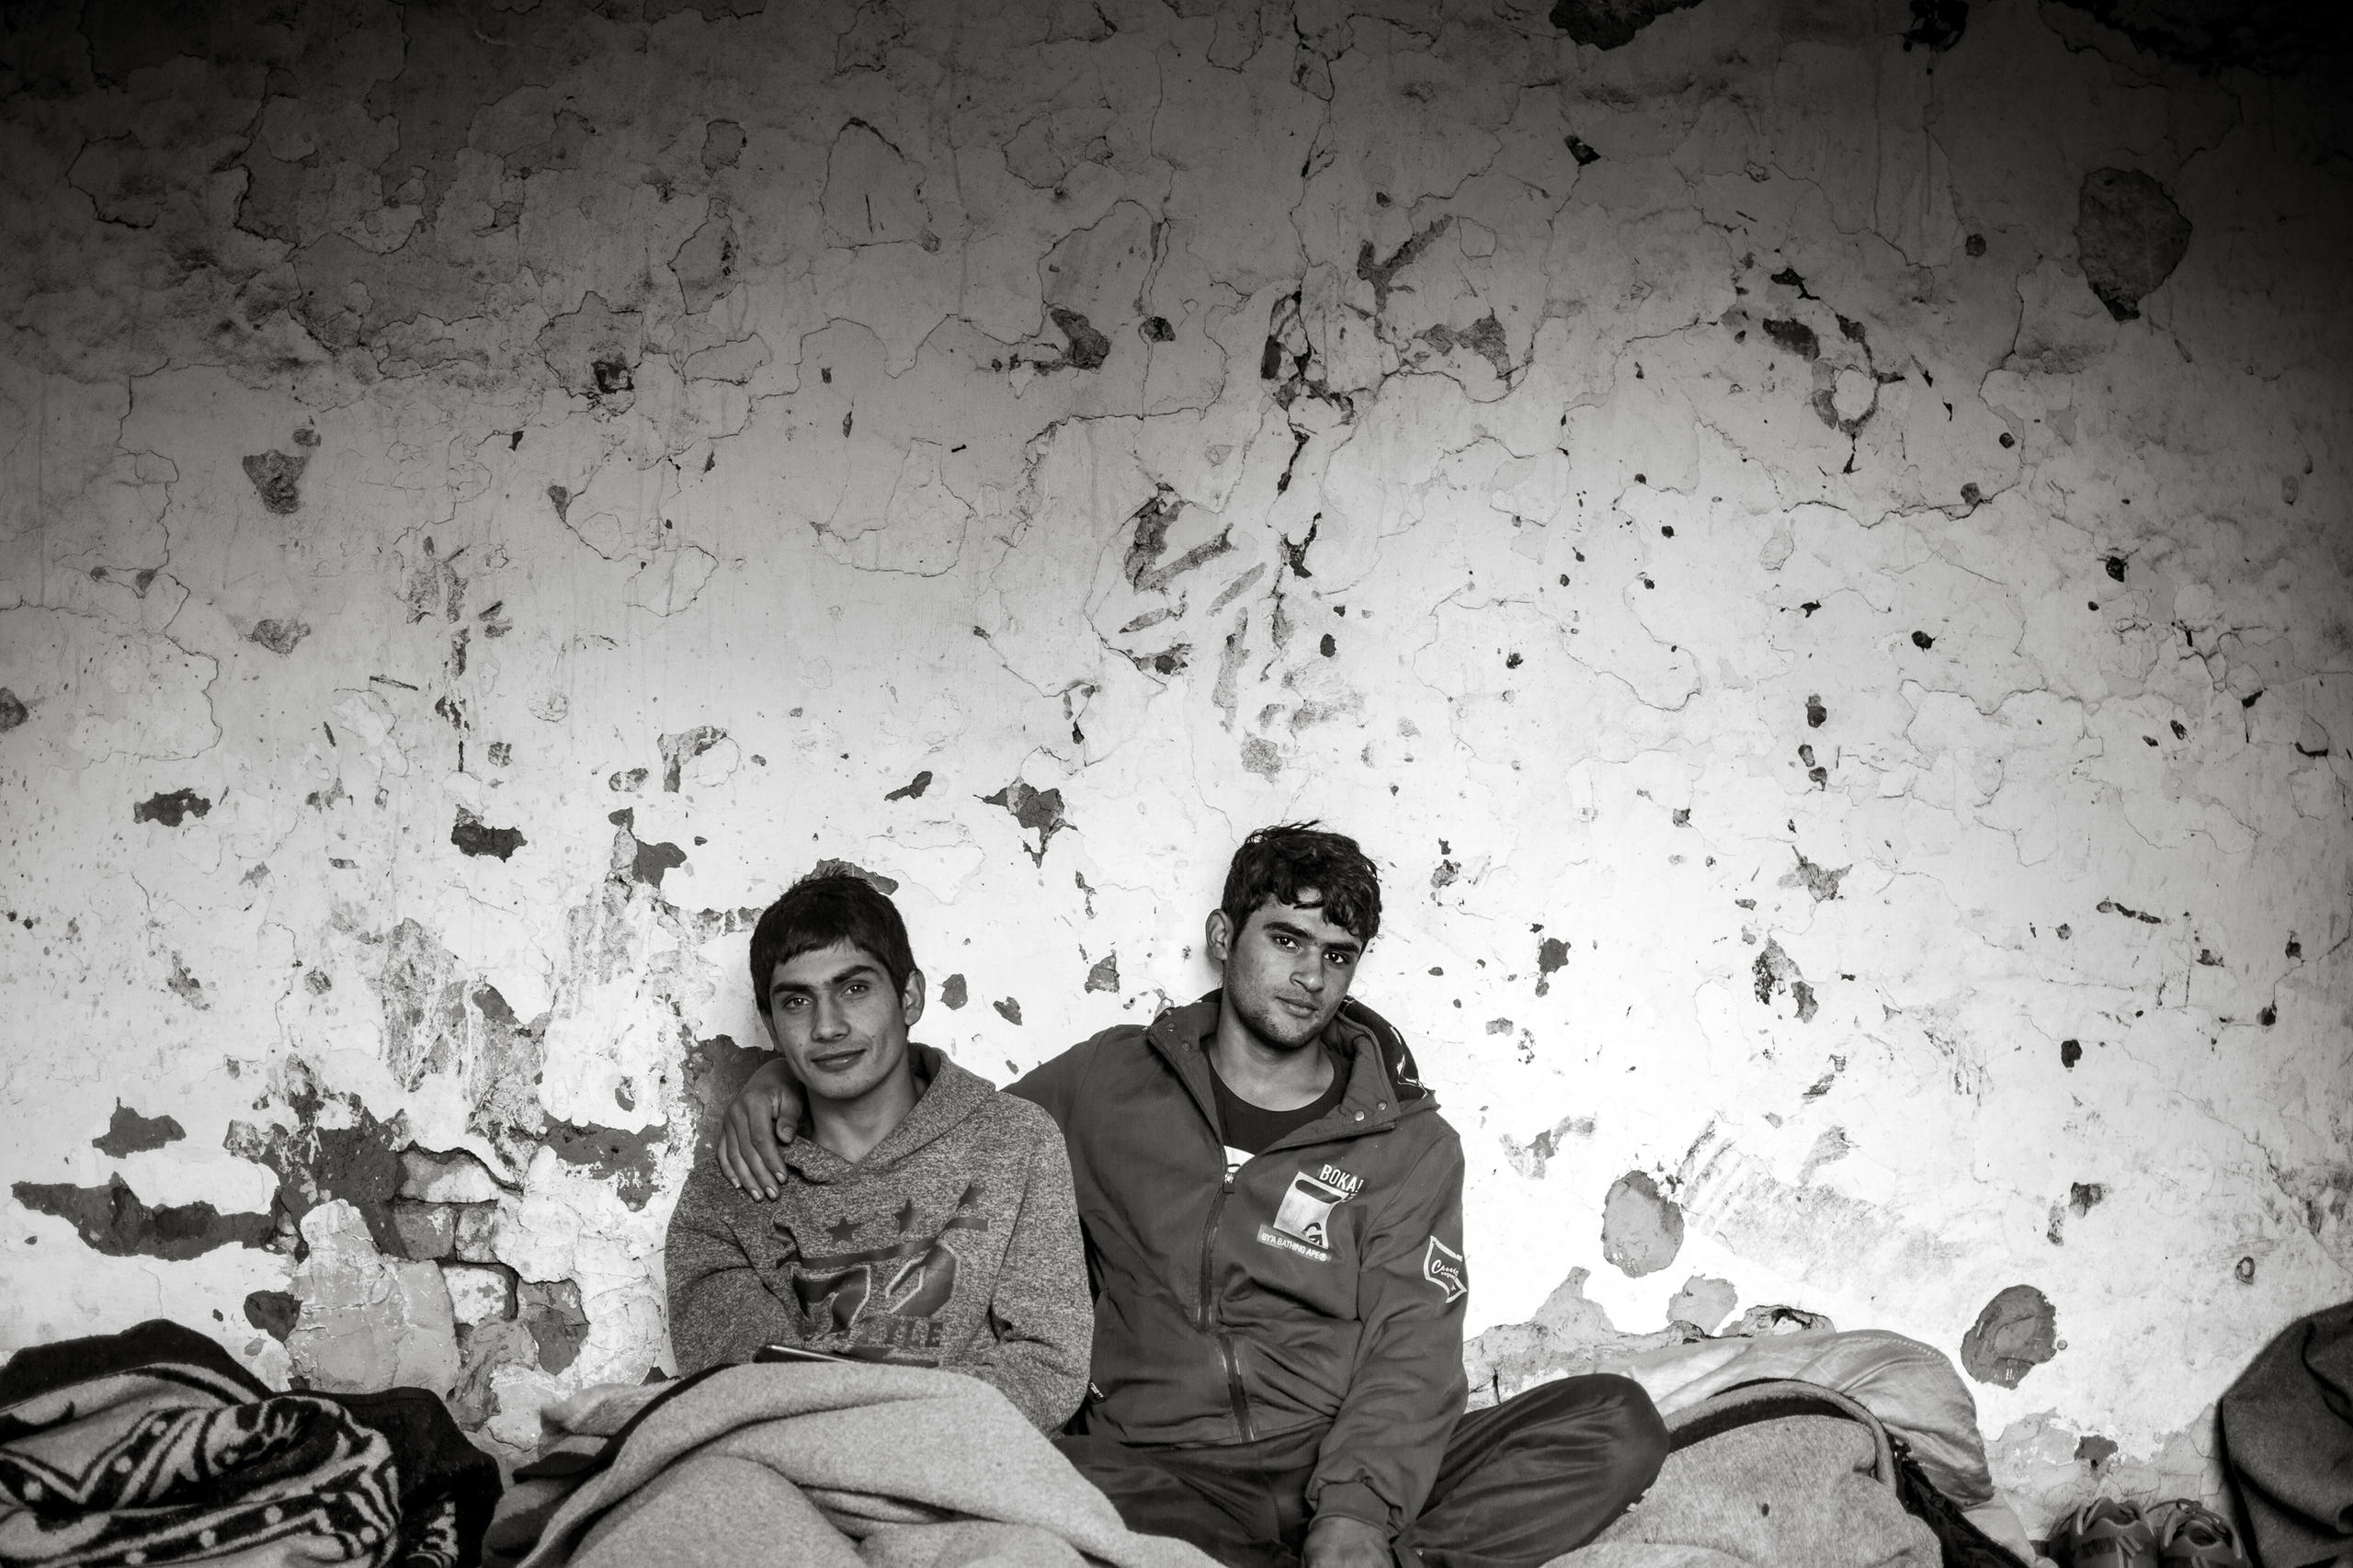 due giovani appoggiati a un muro in pessimo stato